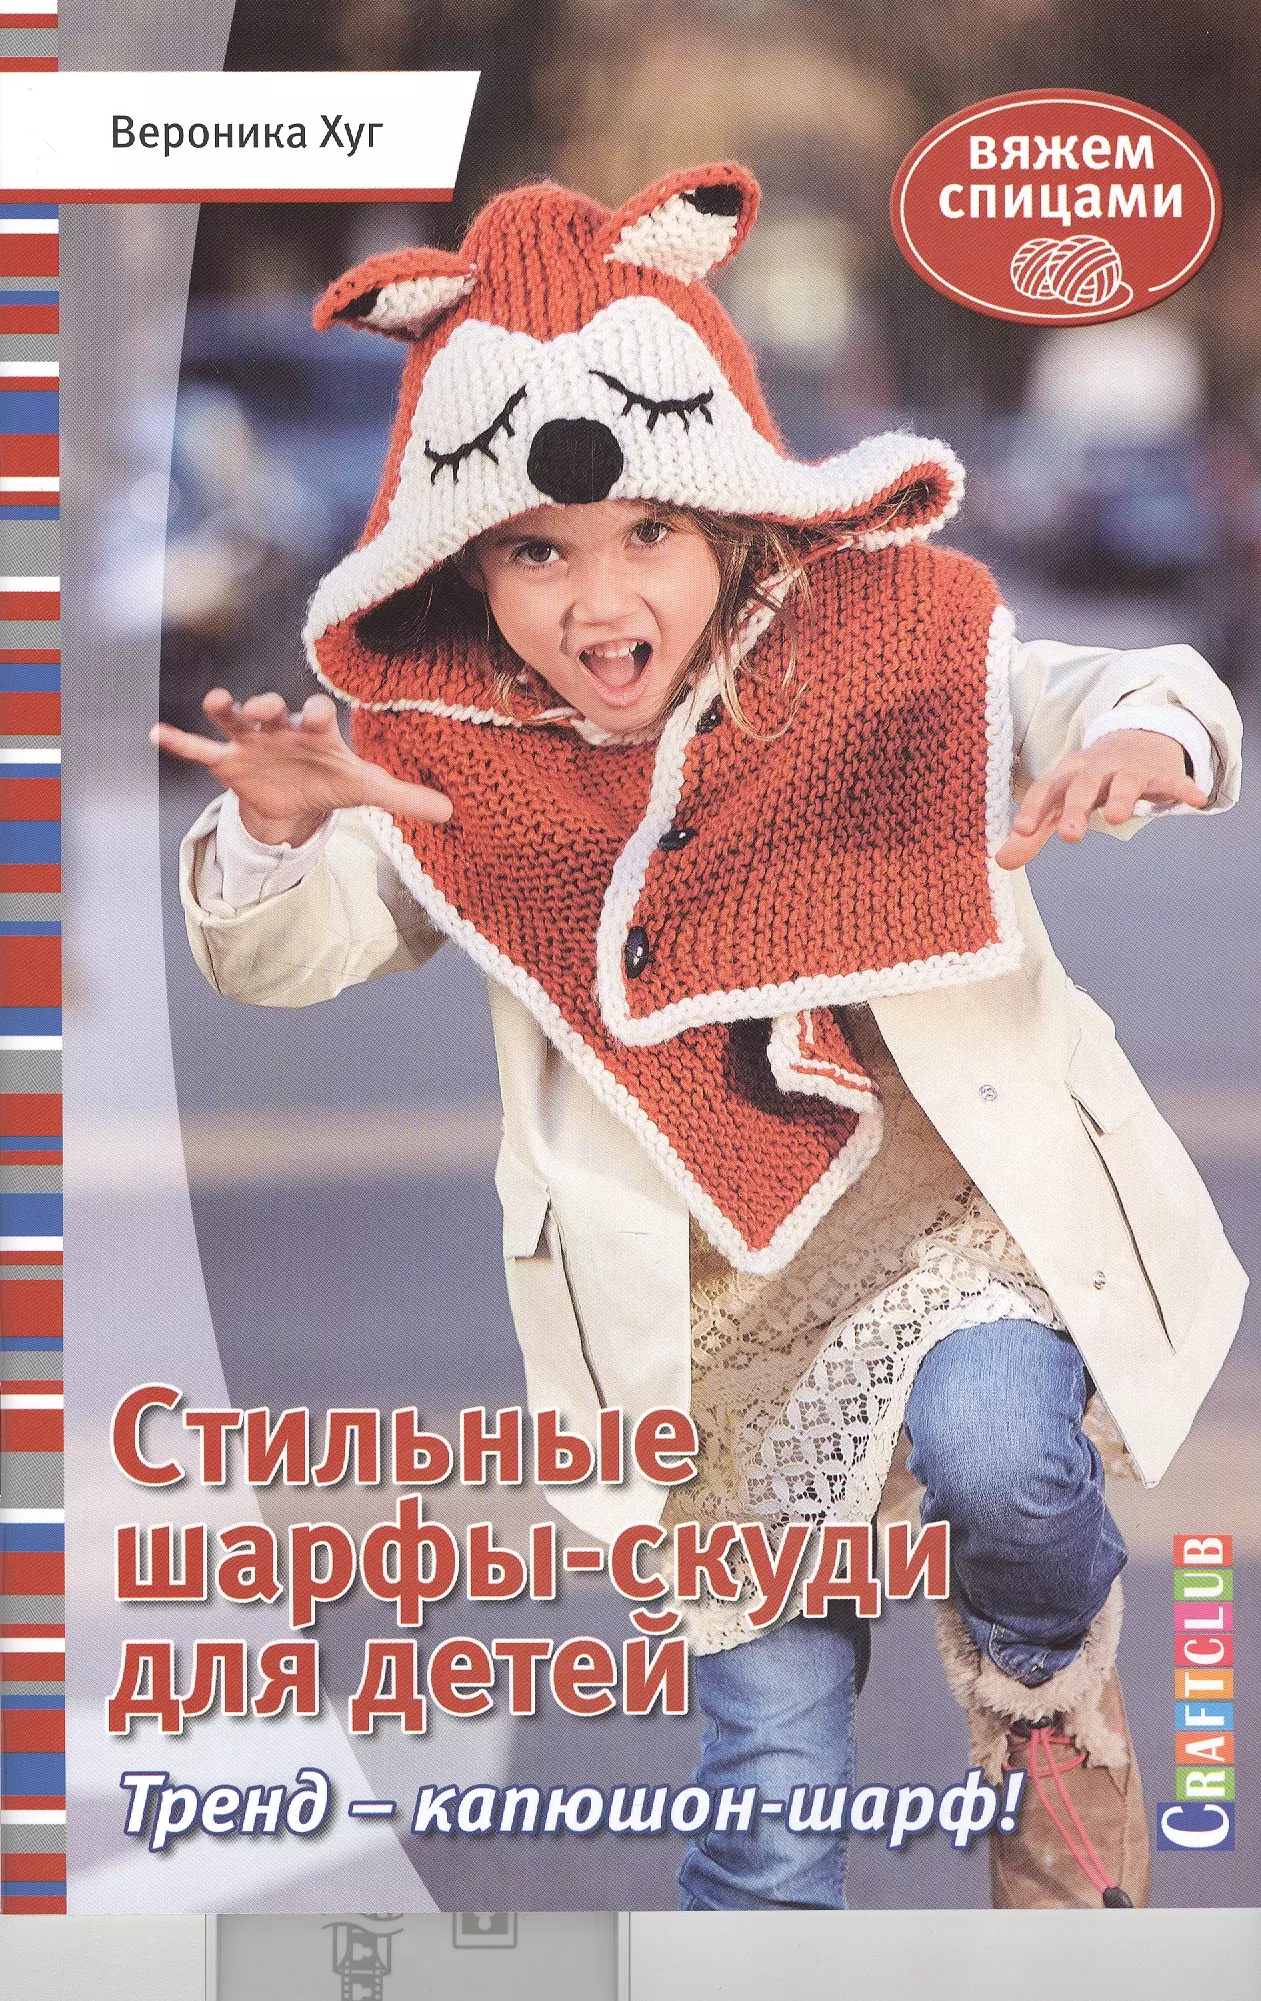 Хуг Вероника - Стильные шарфы-скуди для детей. Вяжем спицами